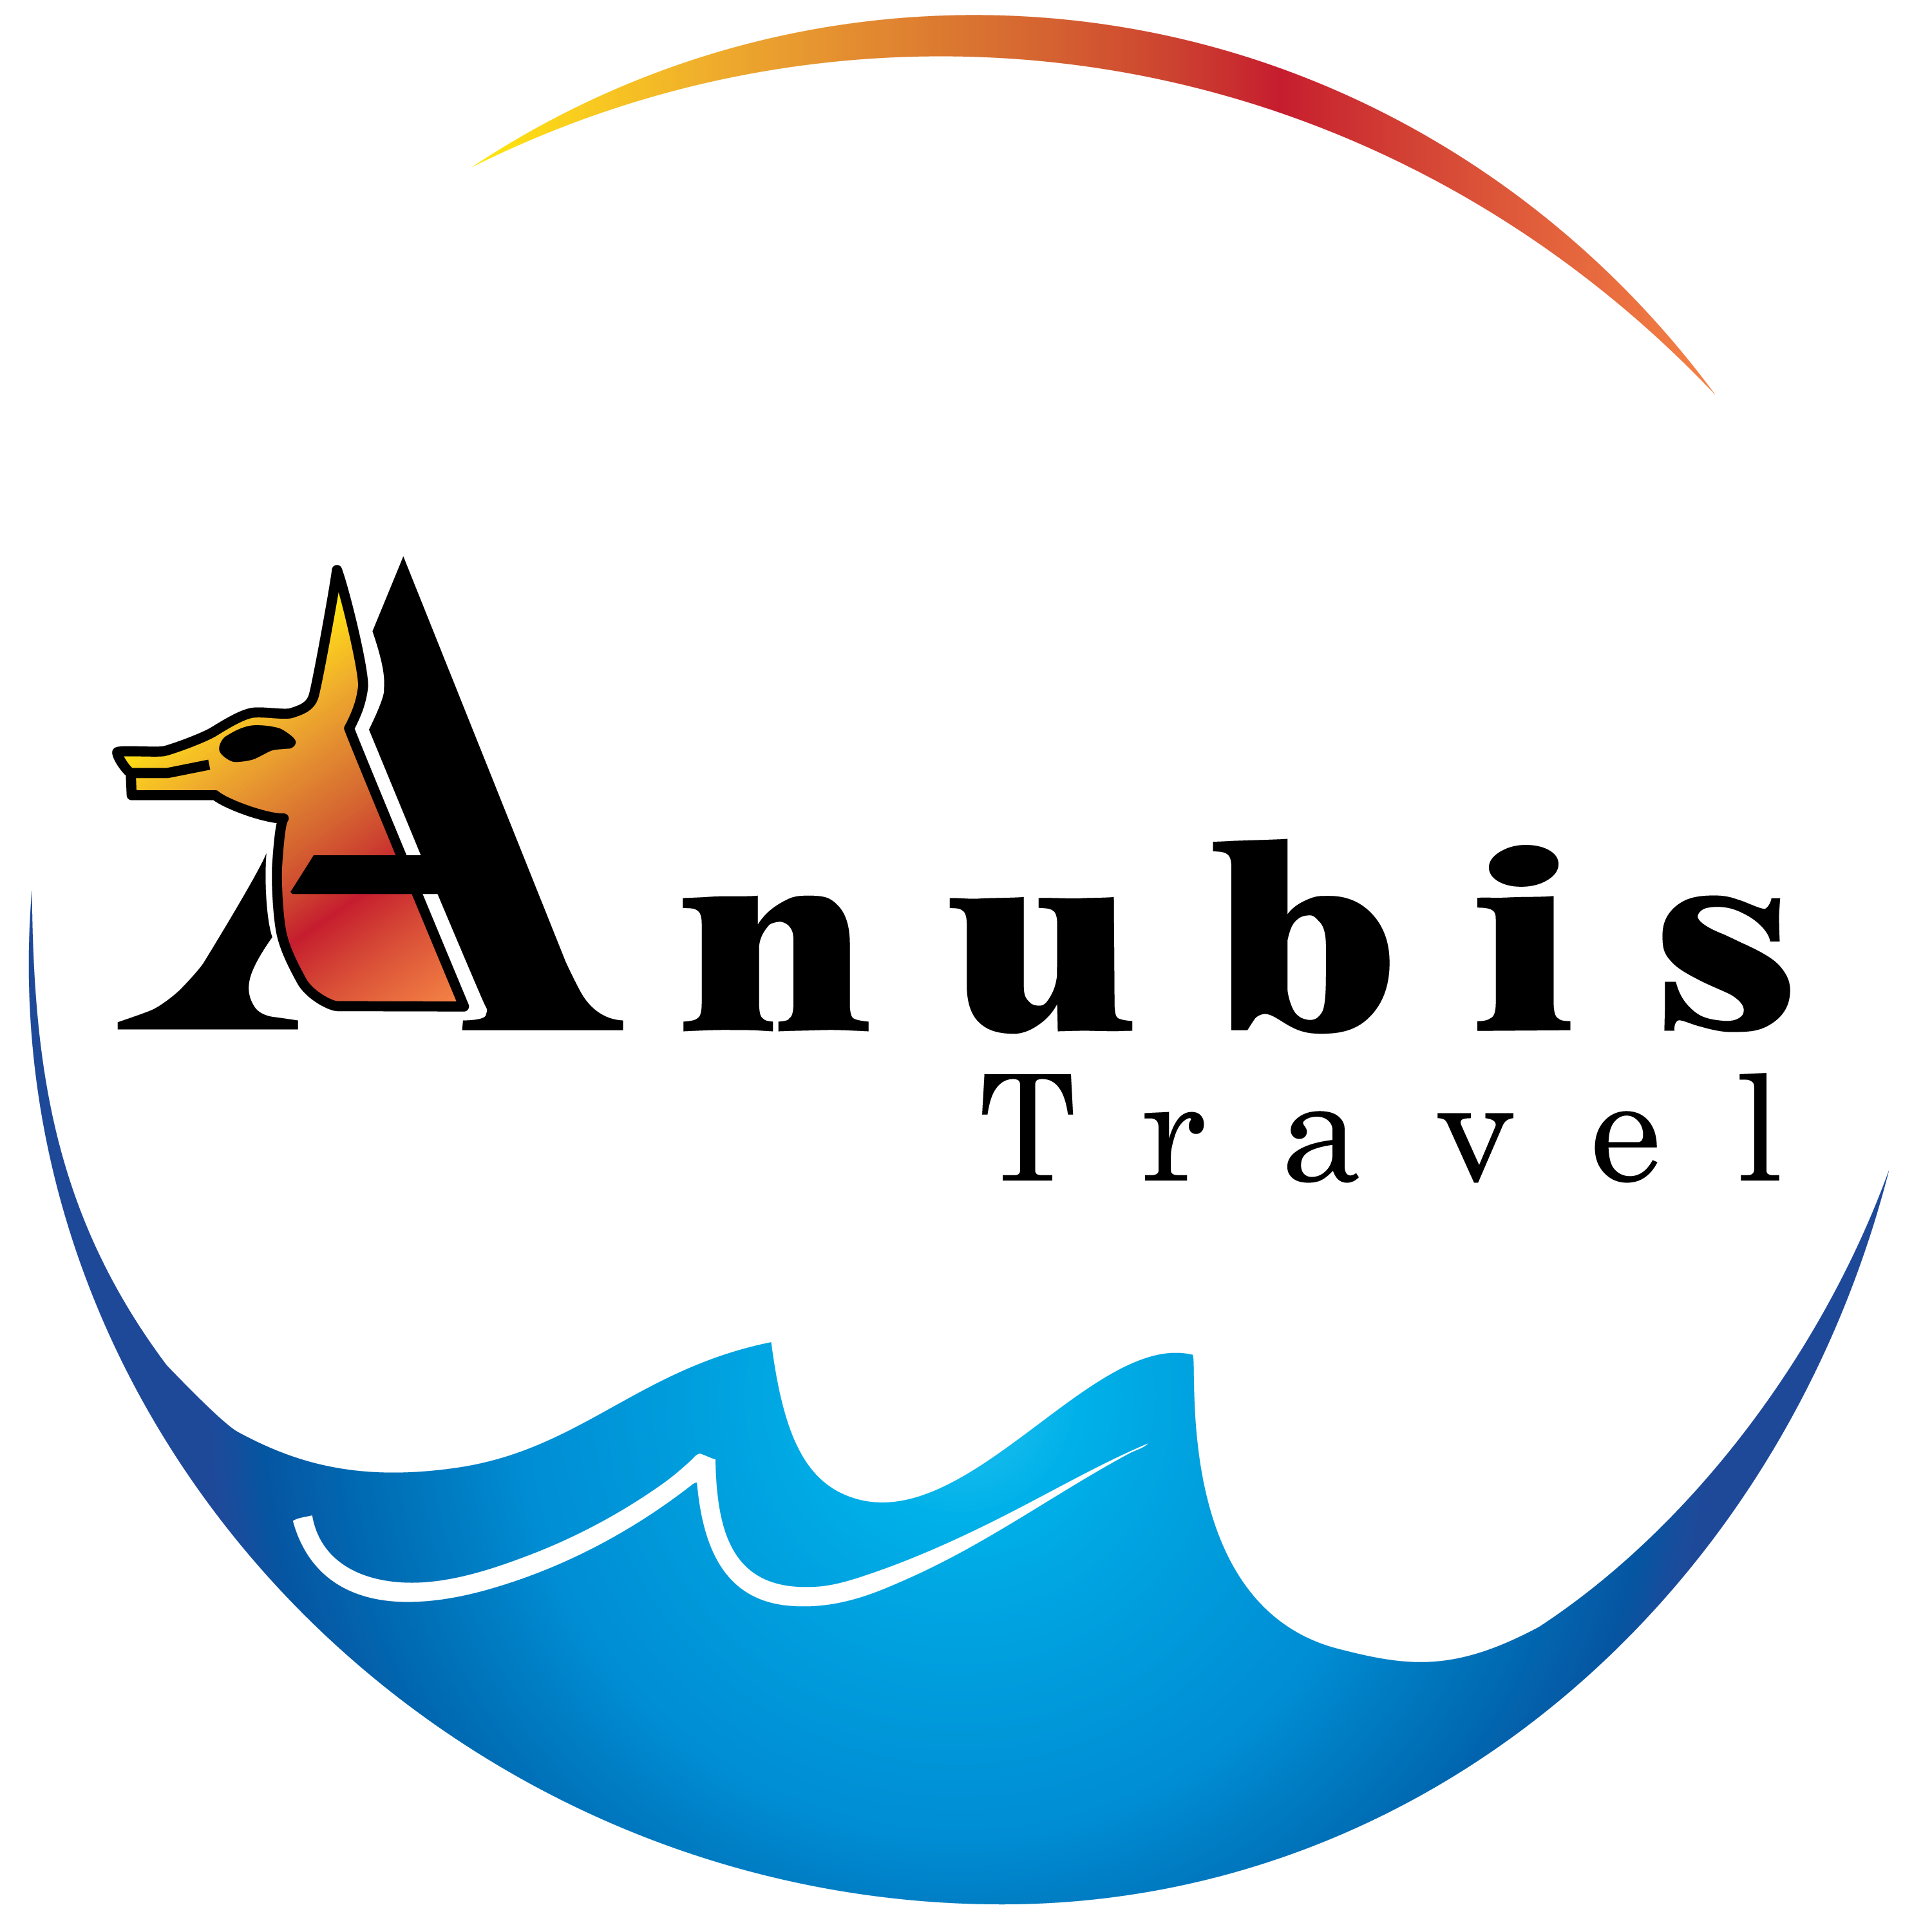 anubis travel last minute